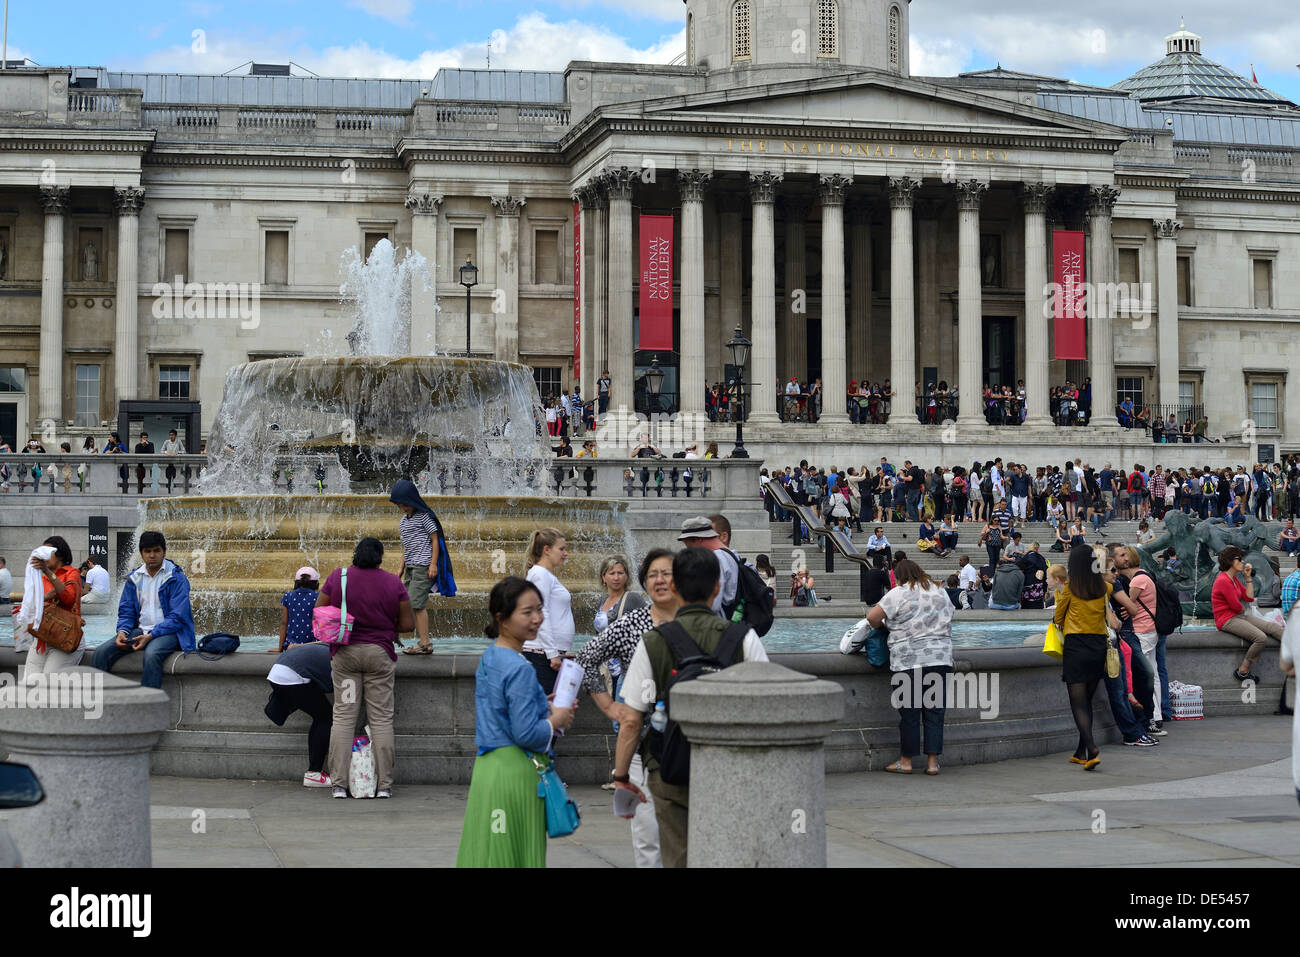 La foule en face de la National Gallery à Trafalgar Square, Londres, lors d'une journée ensoleillée en été Banque D'Images